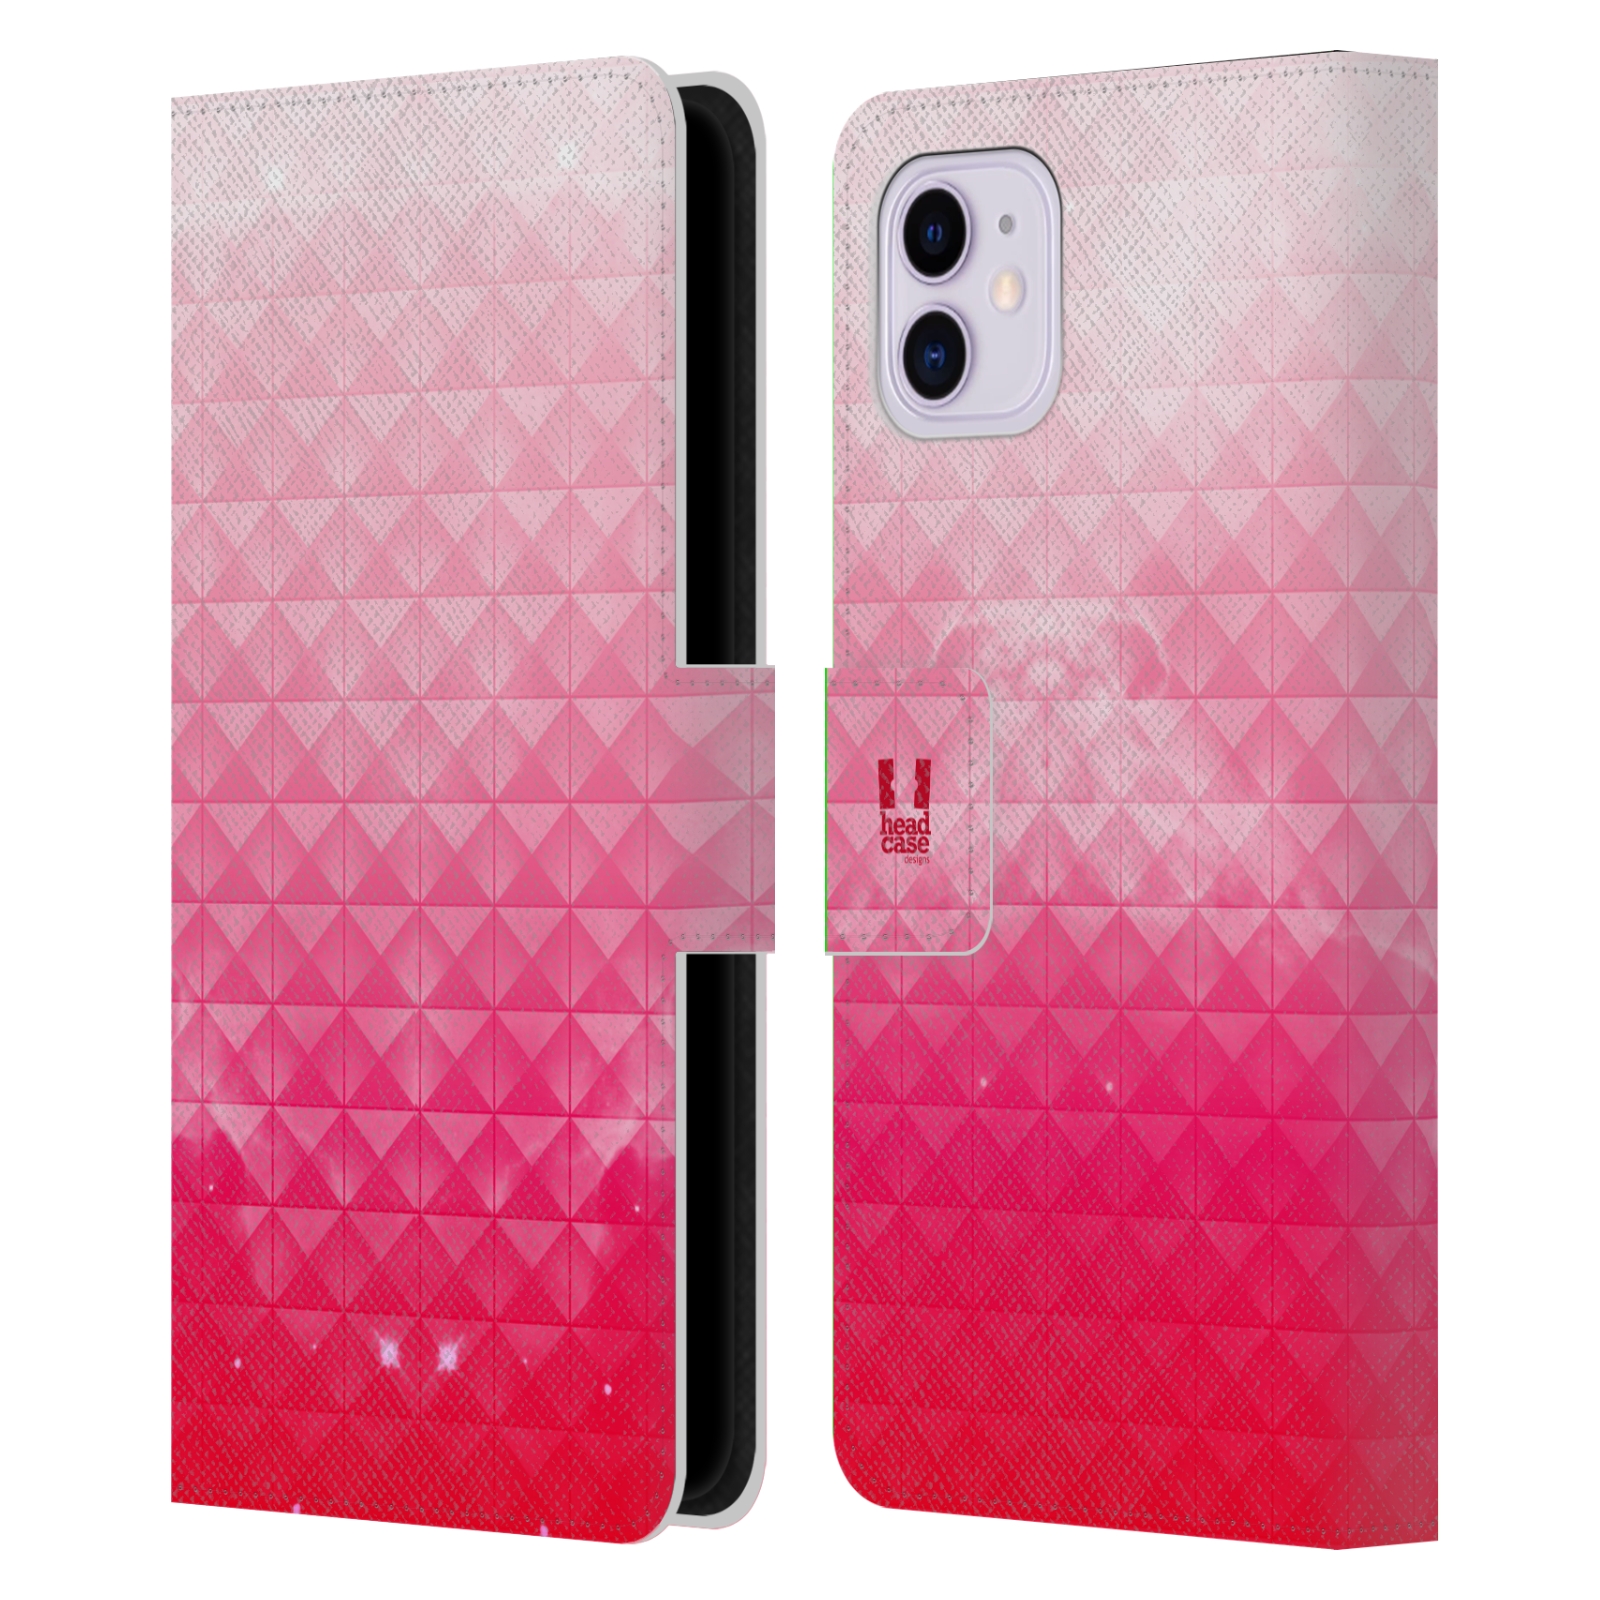 Pouzdro na mobil Apple Iphone 11 barevná vesmírná mlhovina růžová jahoda